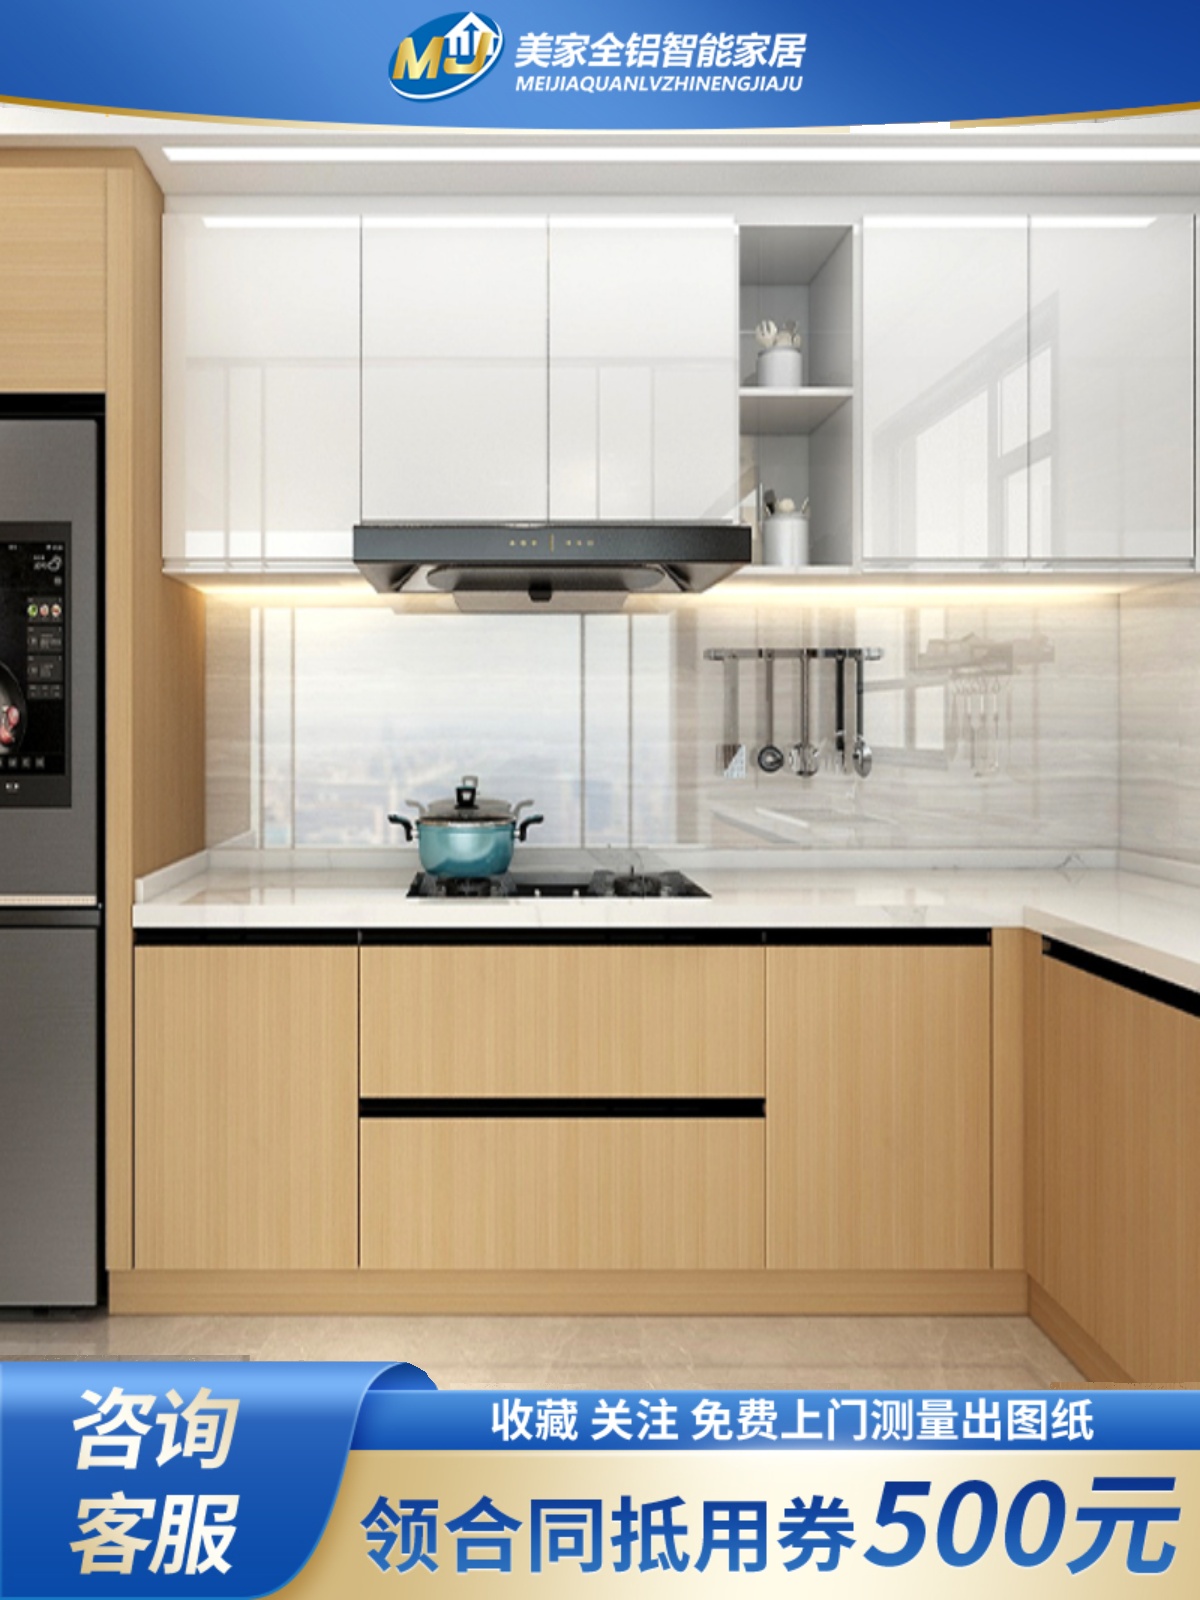 促销美诚美家铝合金环保橱柜装修设计橱柜定制现代简约开放式厨房